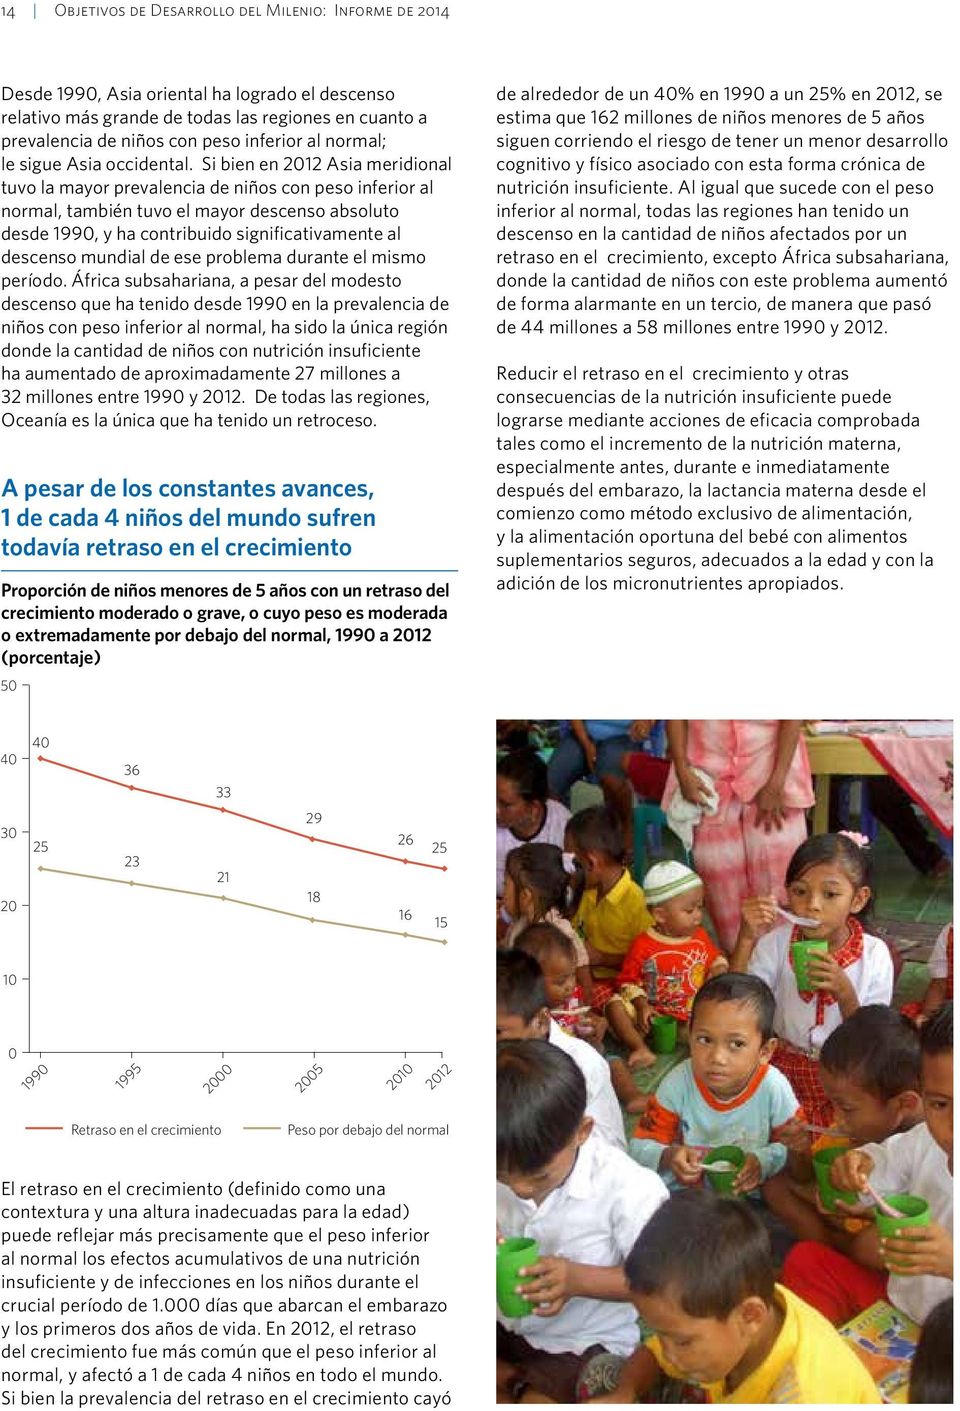 Si bien en 2012 Asia meridional tuvo la mayor prevalencia de niños con peso inferior al normal, también tuvo el mayor descenso absoluto desde 1990, y ha contribuido significativamente al descenso